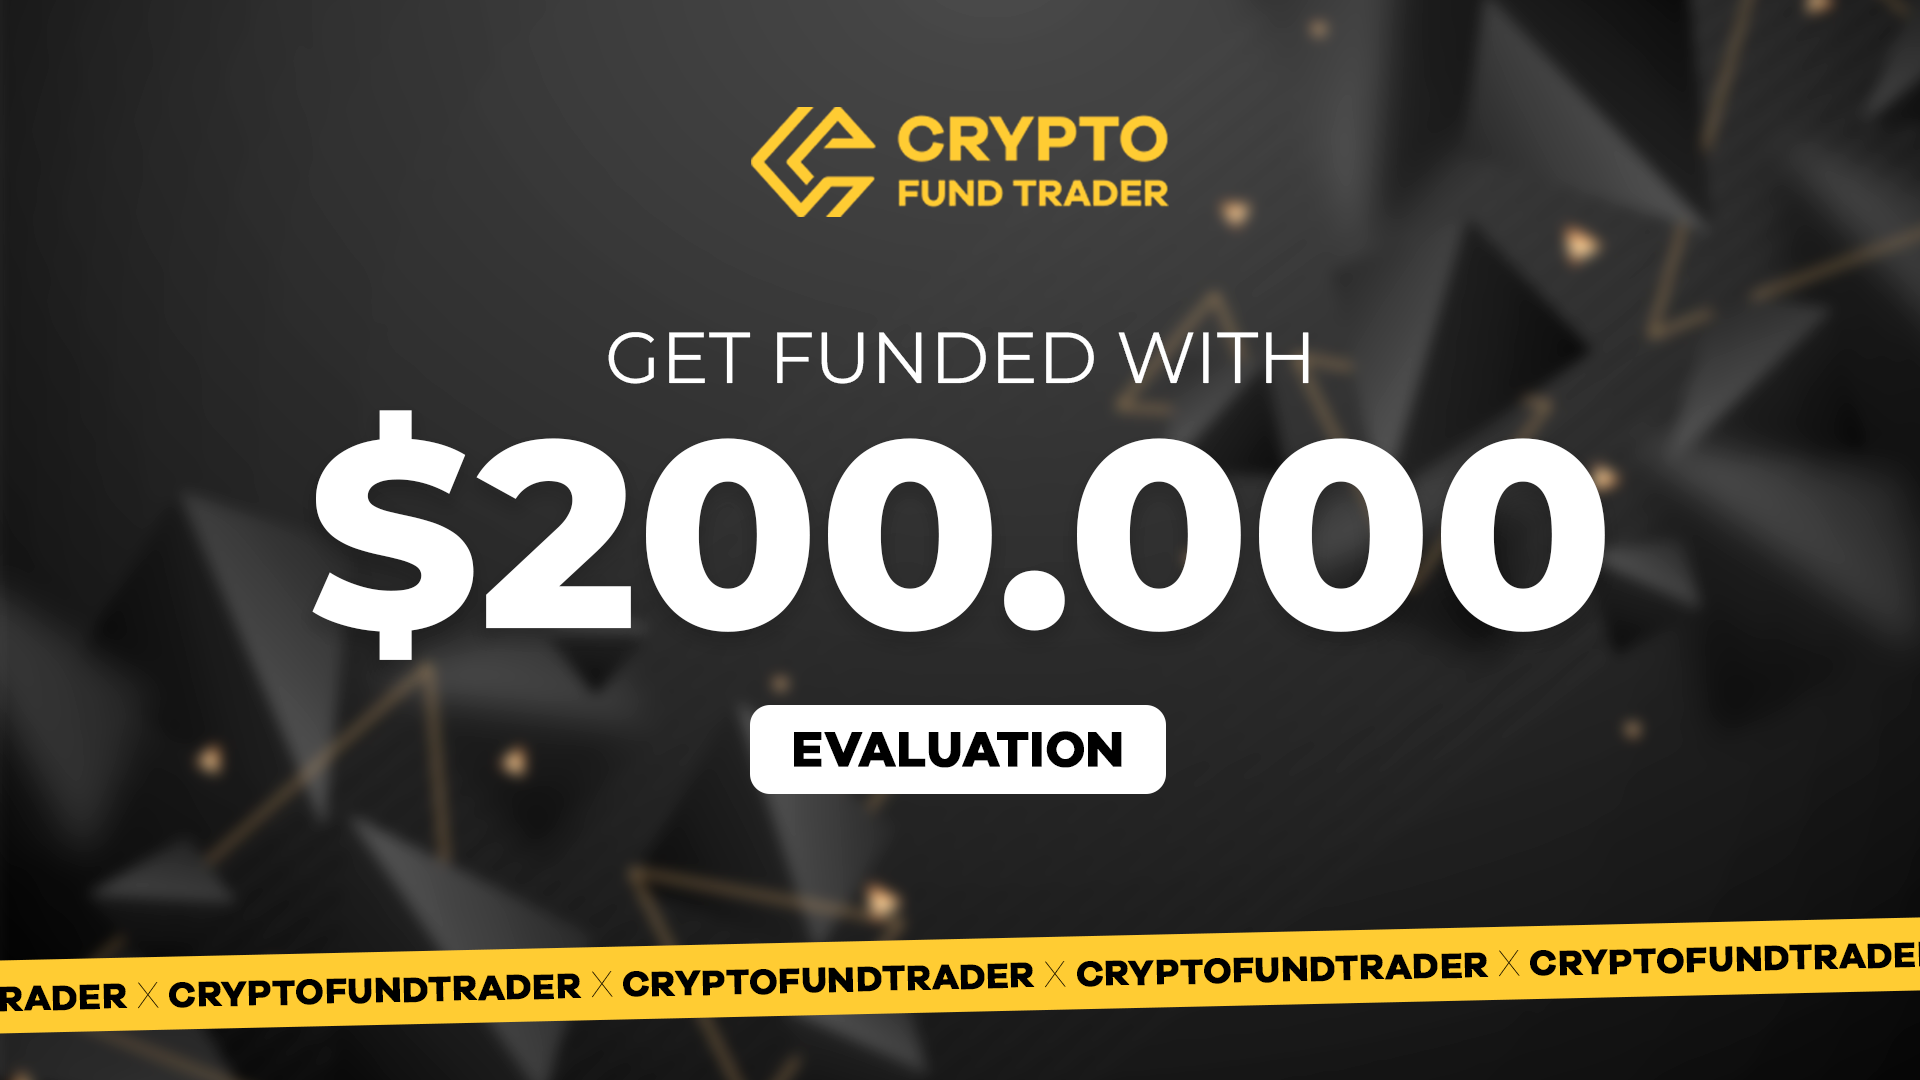 Crypto Fund Trader - $200.000 Evaluation Voucher 1127.7 $